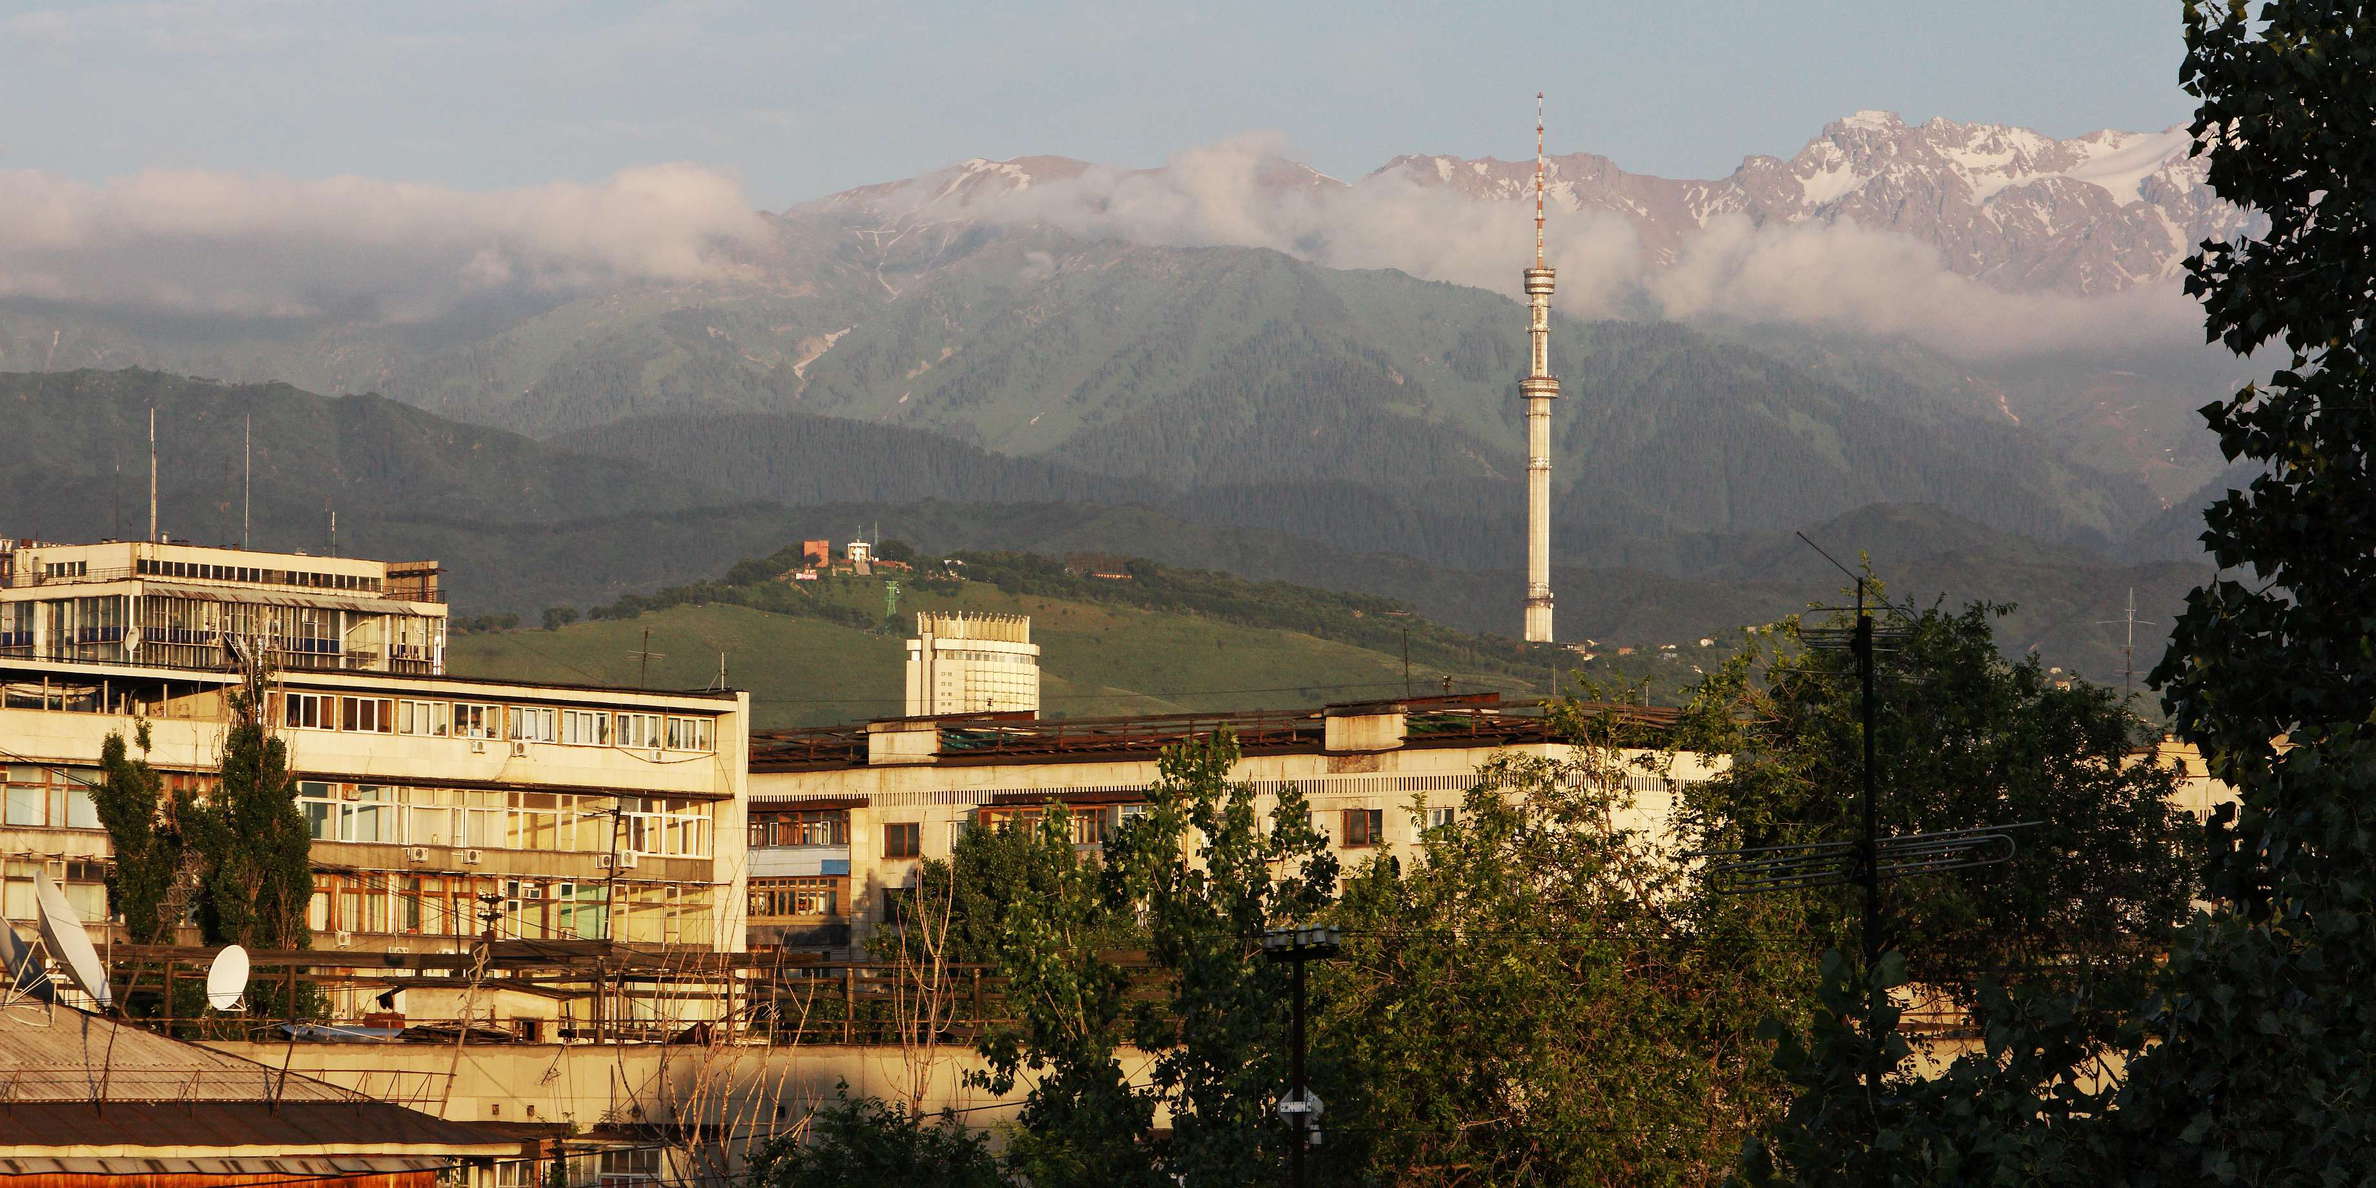 Almaty with Zailiysky Alatau Range